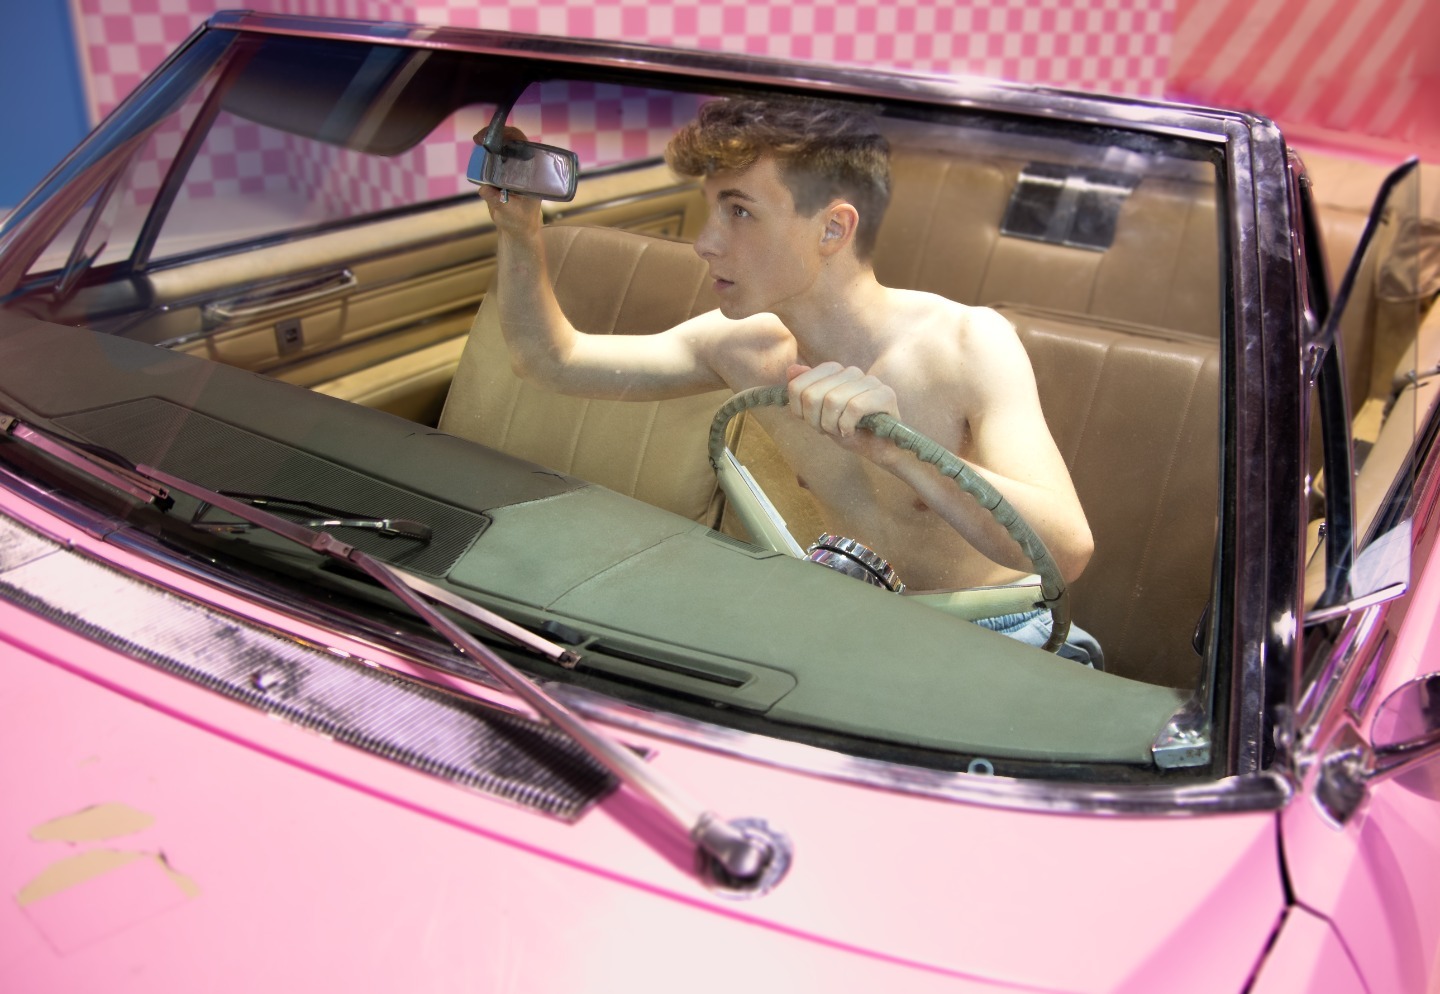 Spritztour gefällig? 🏎️ 💦 

#spritztour #car #boy #hotmodel #gayboy #cuteboy